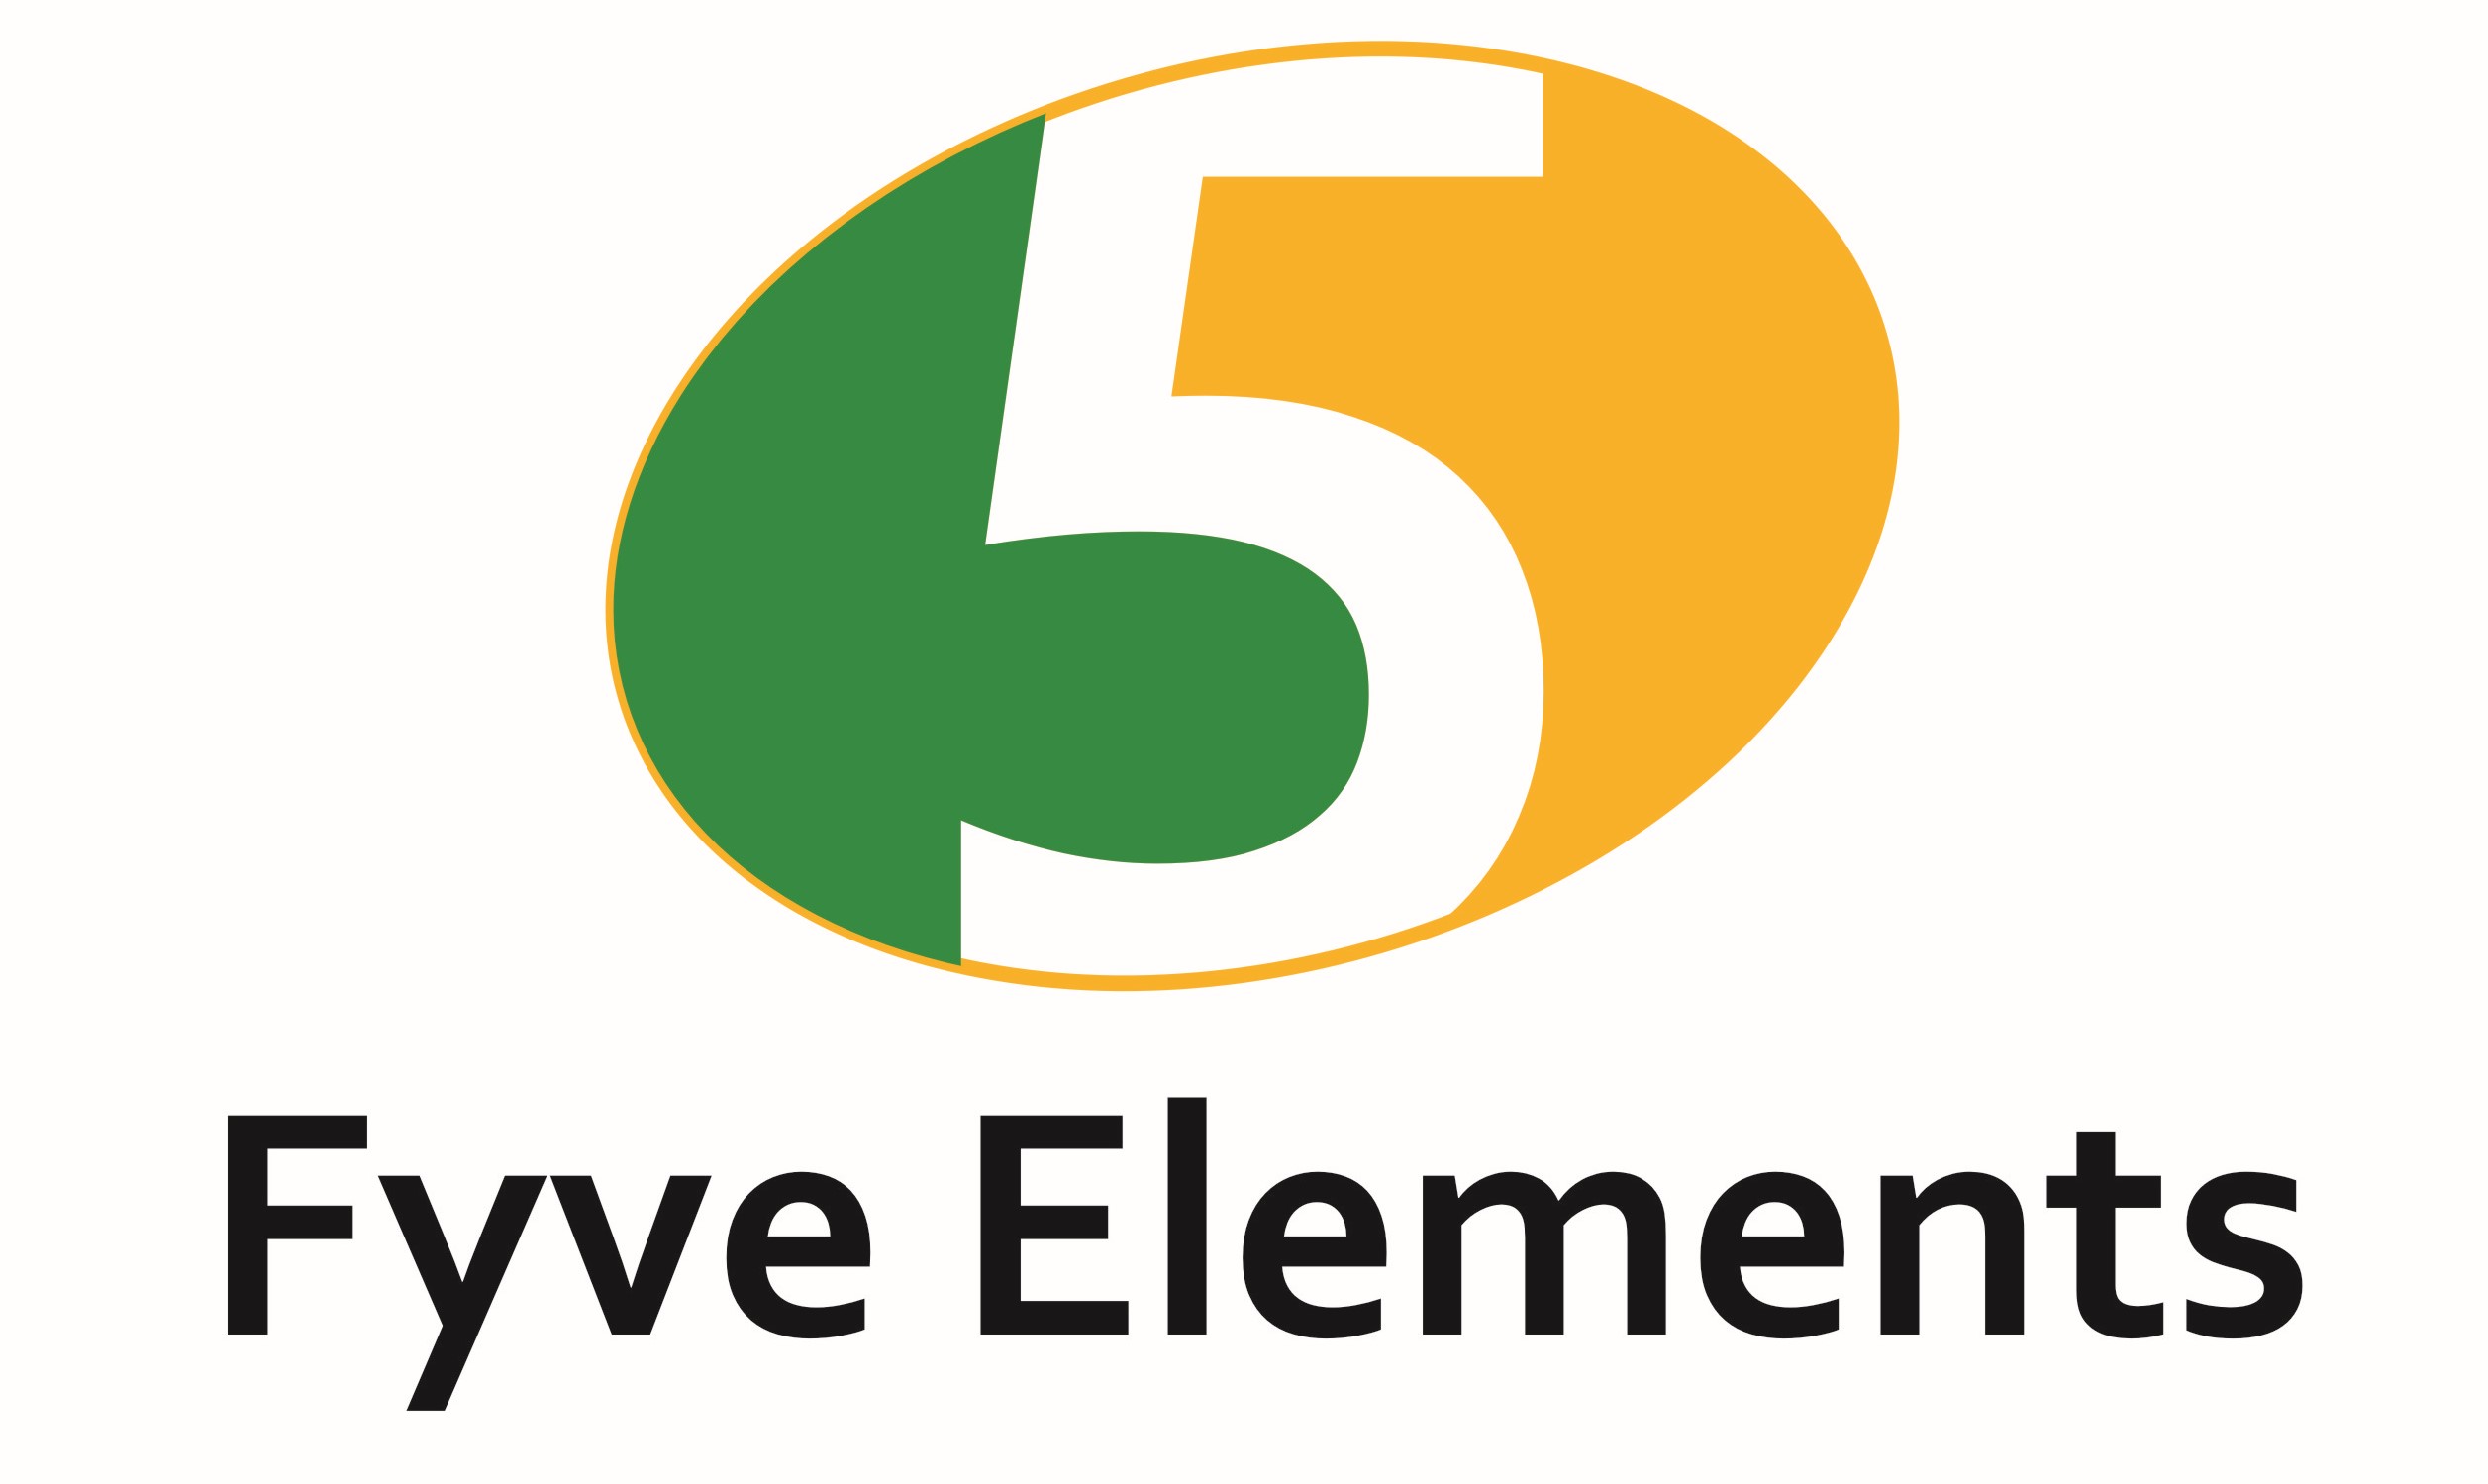 Fyve Elements logo